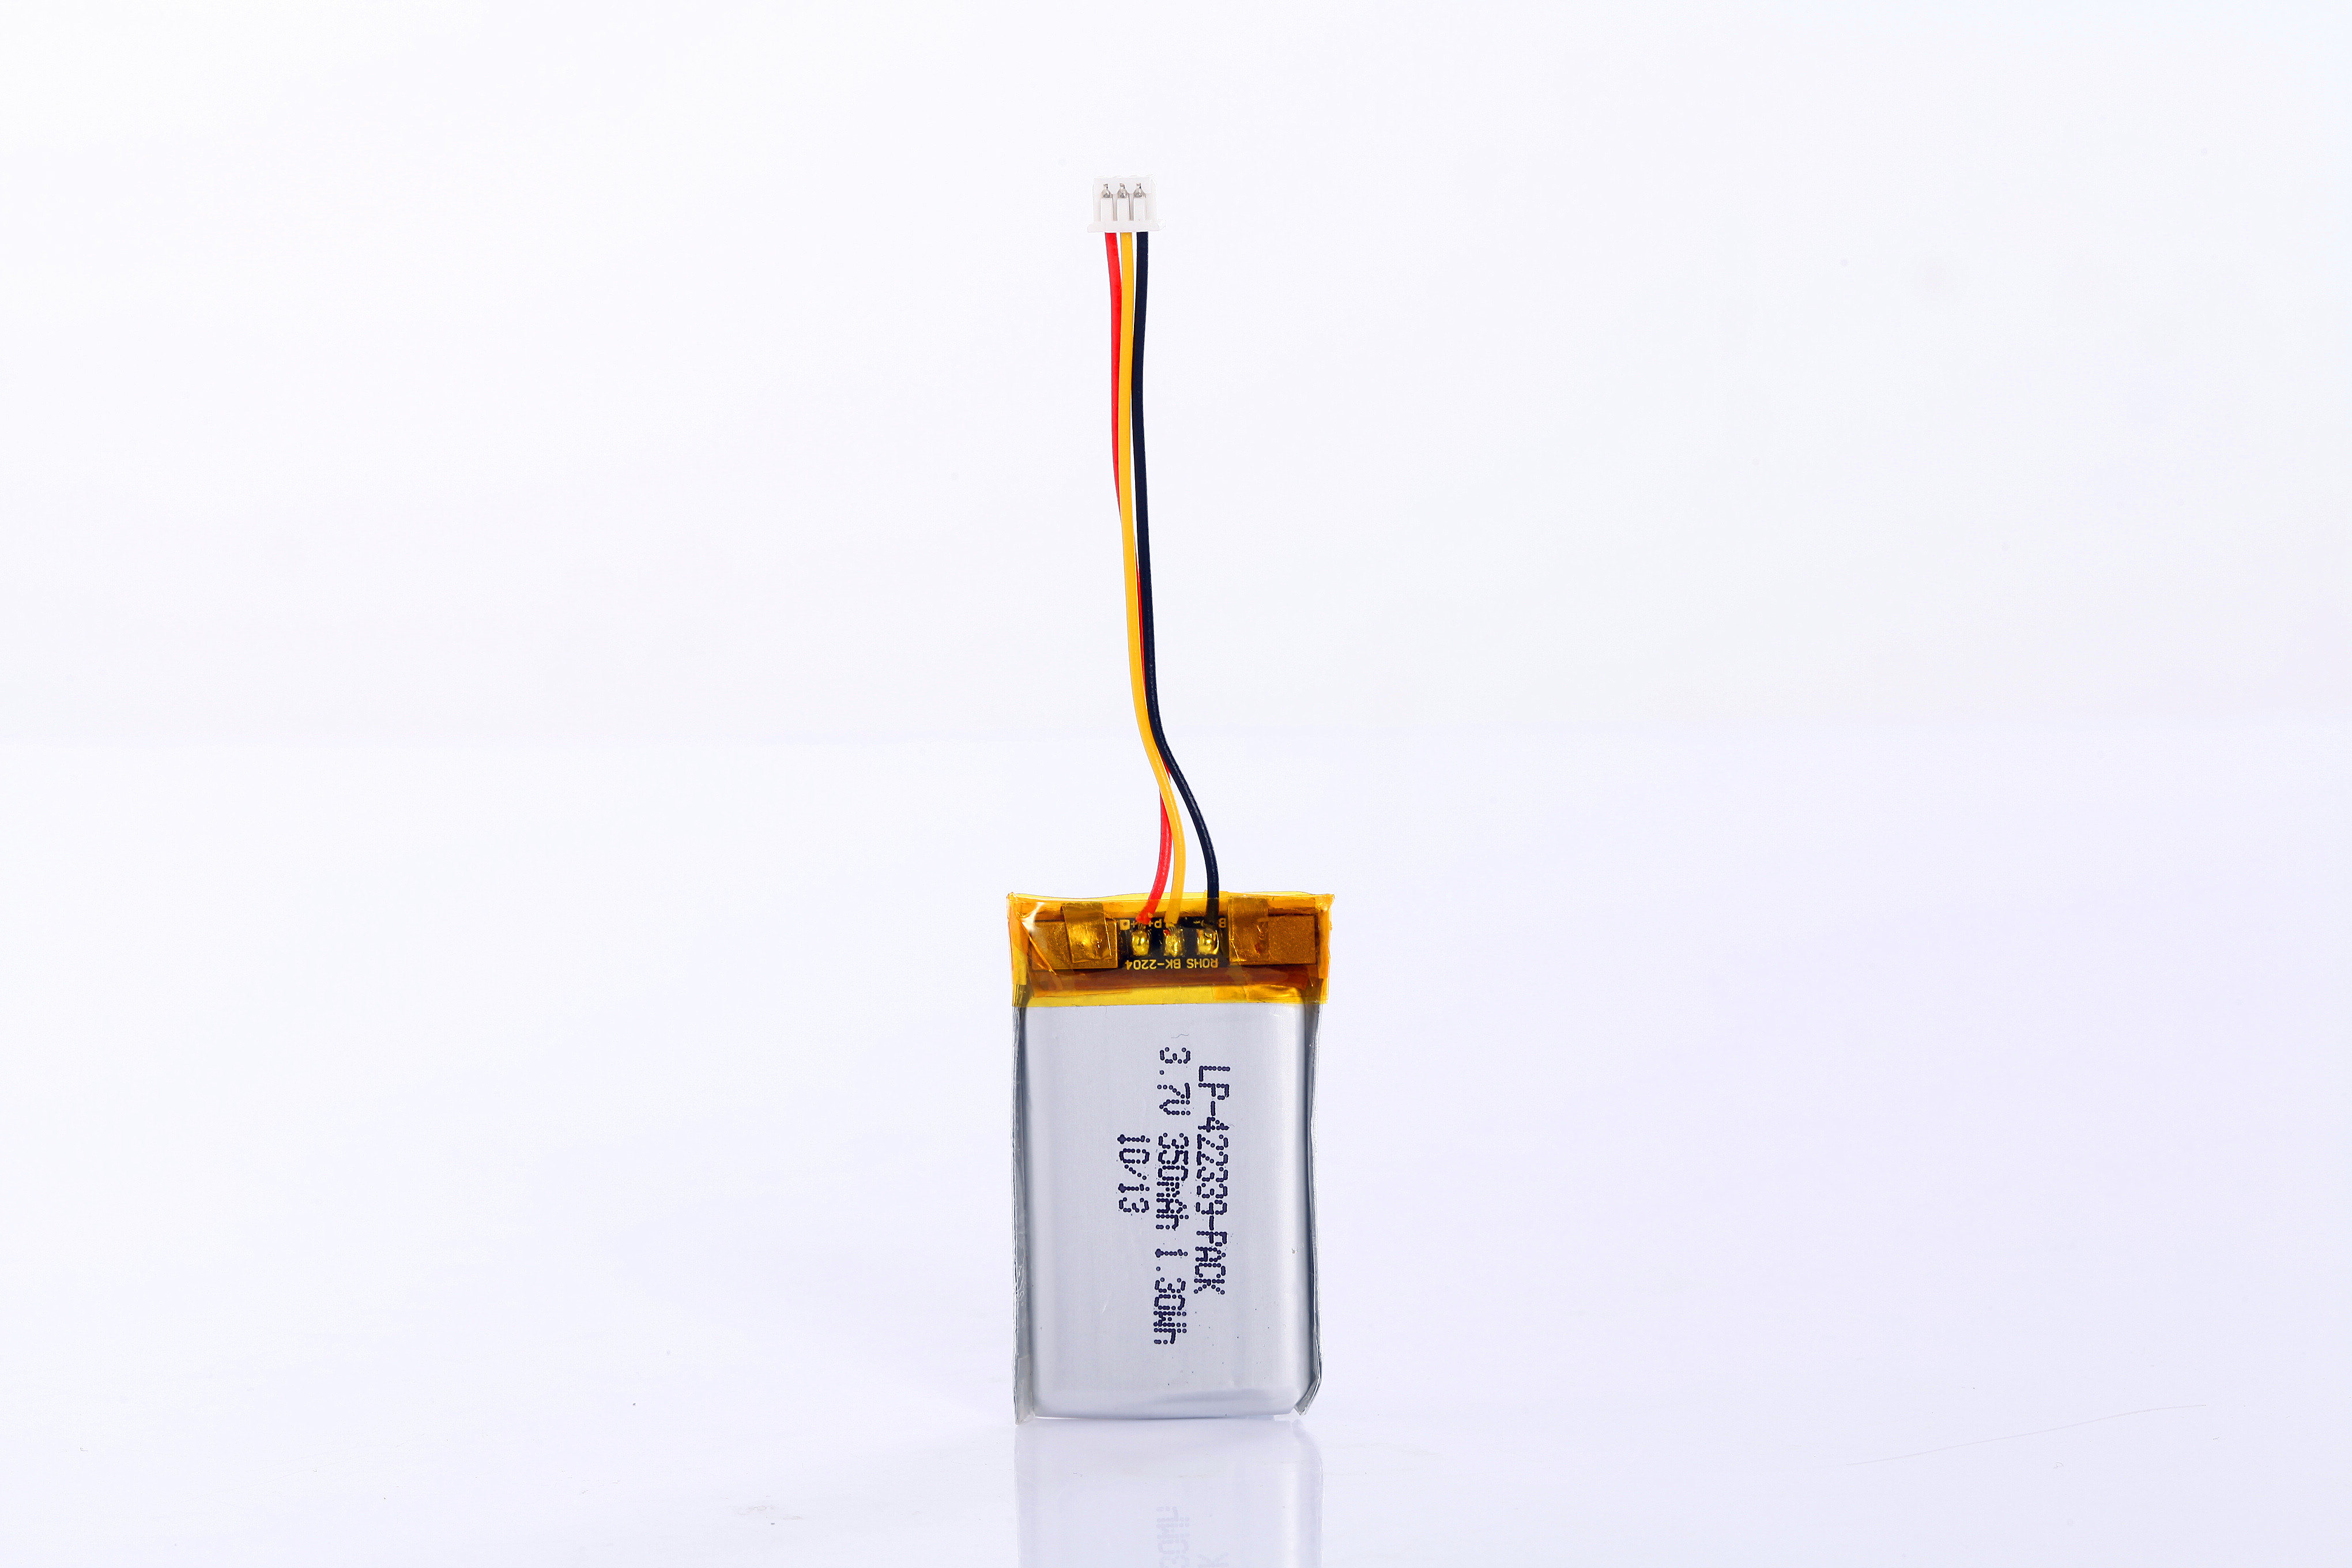 3.7V 350 mAh Batería de polímero de litio recargable para electrodomésticos